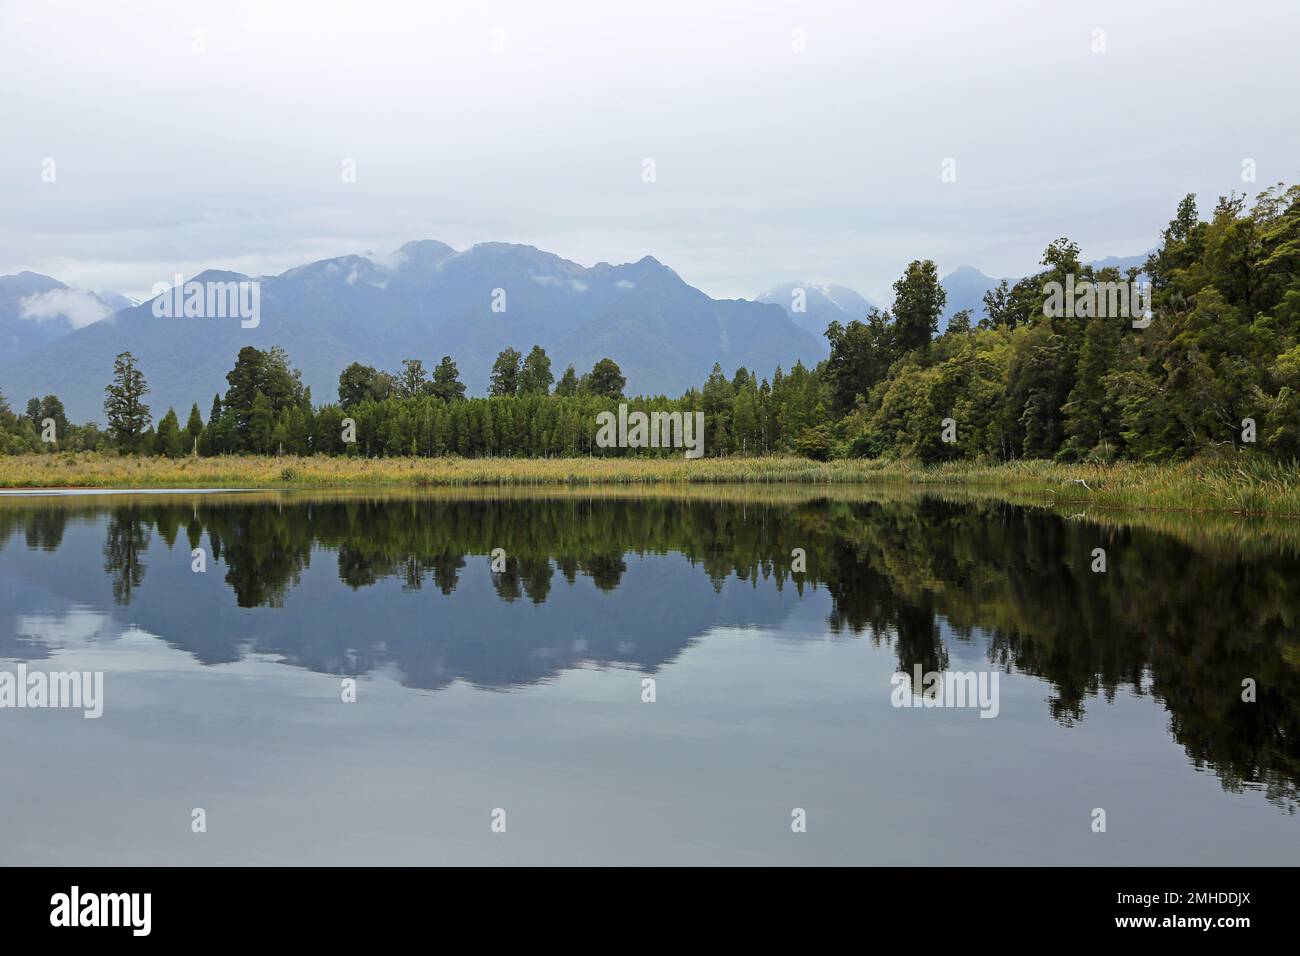 On Matheson Lake, New Zealand Stock Photo